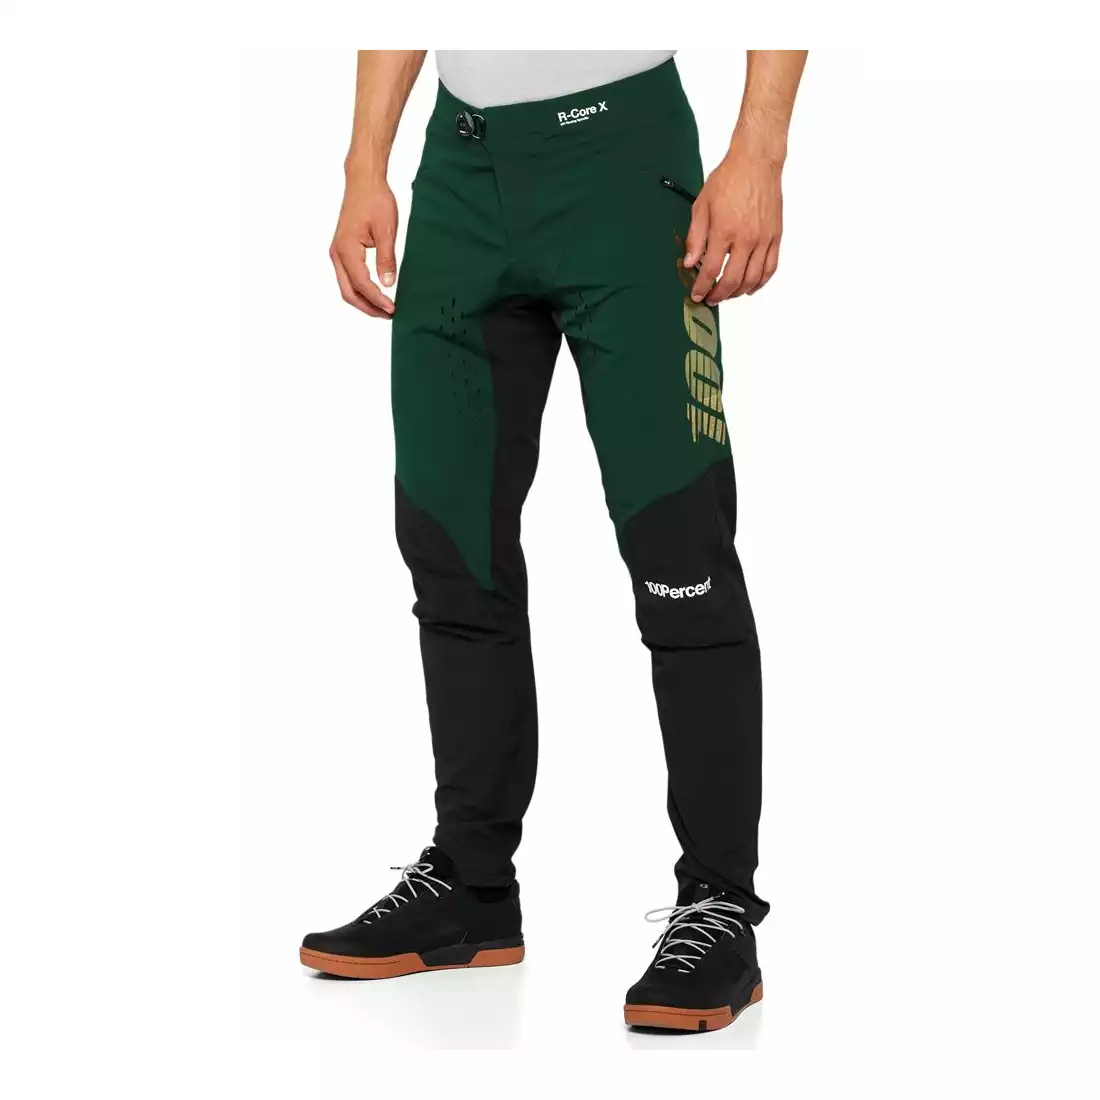 100% R-CORE X  Pánské cyklistické kalhoty Limited Edition, zeleno-černé